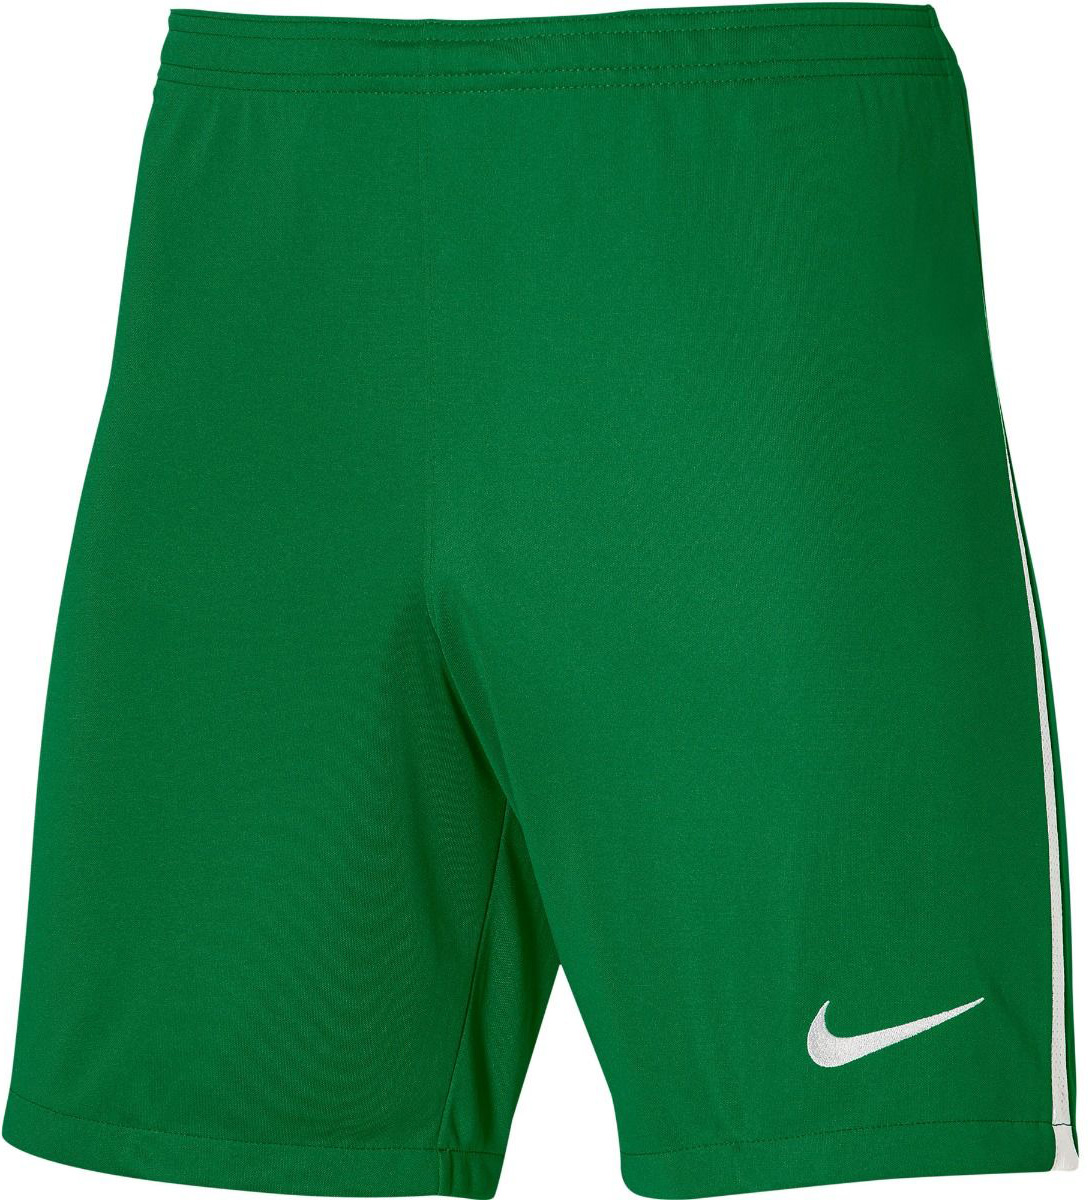 Pánské fotbalové šortky Nike League III